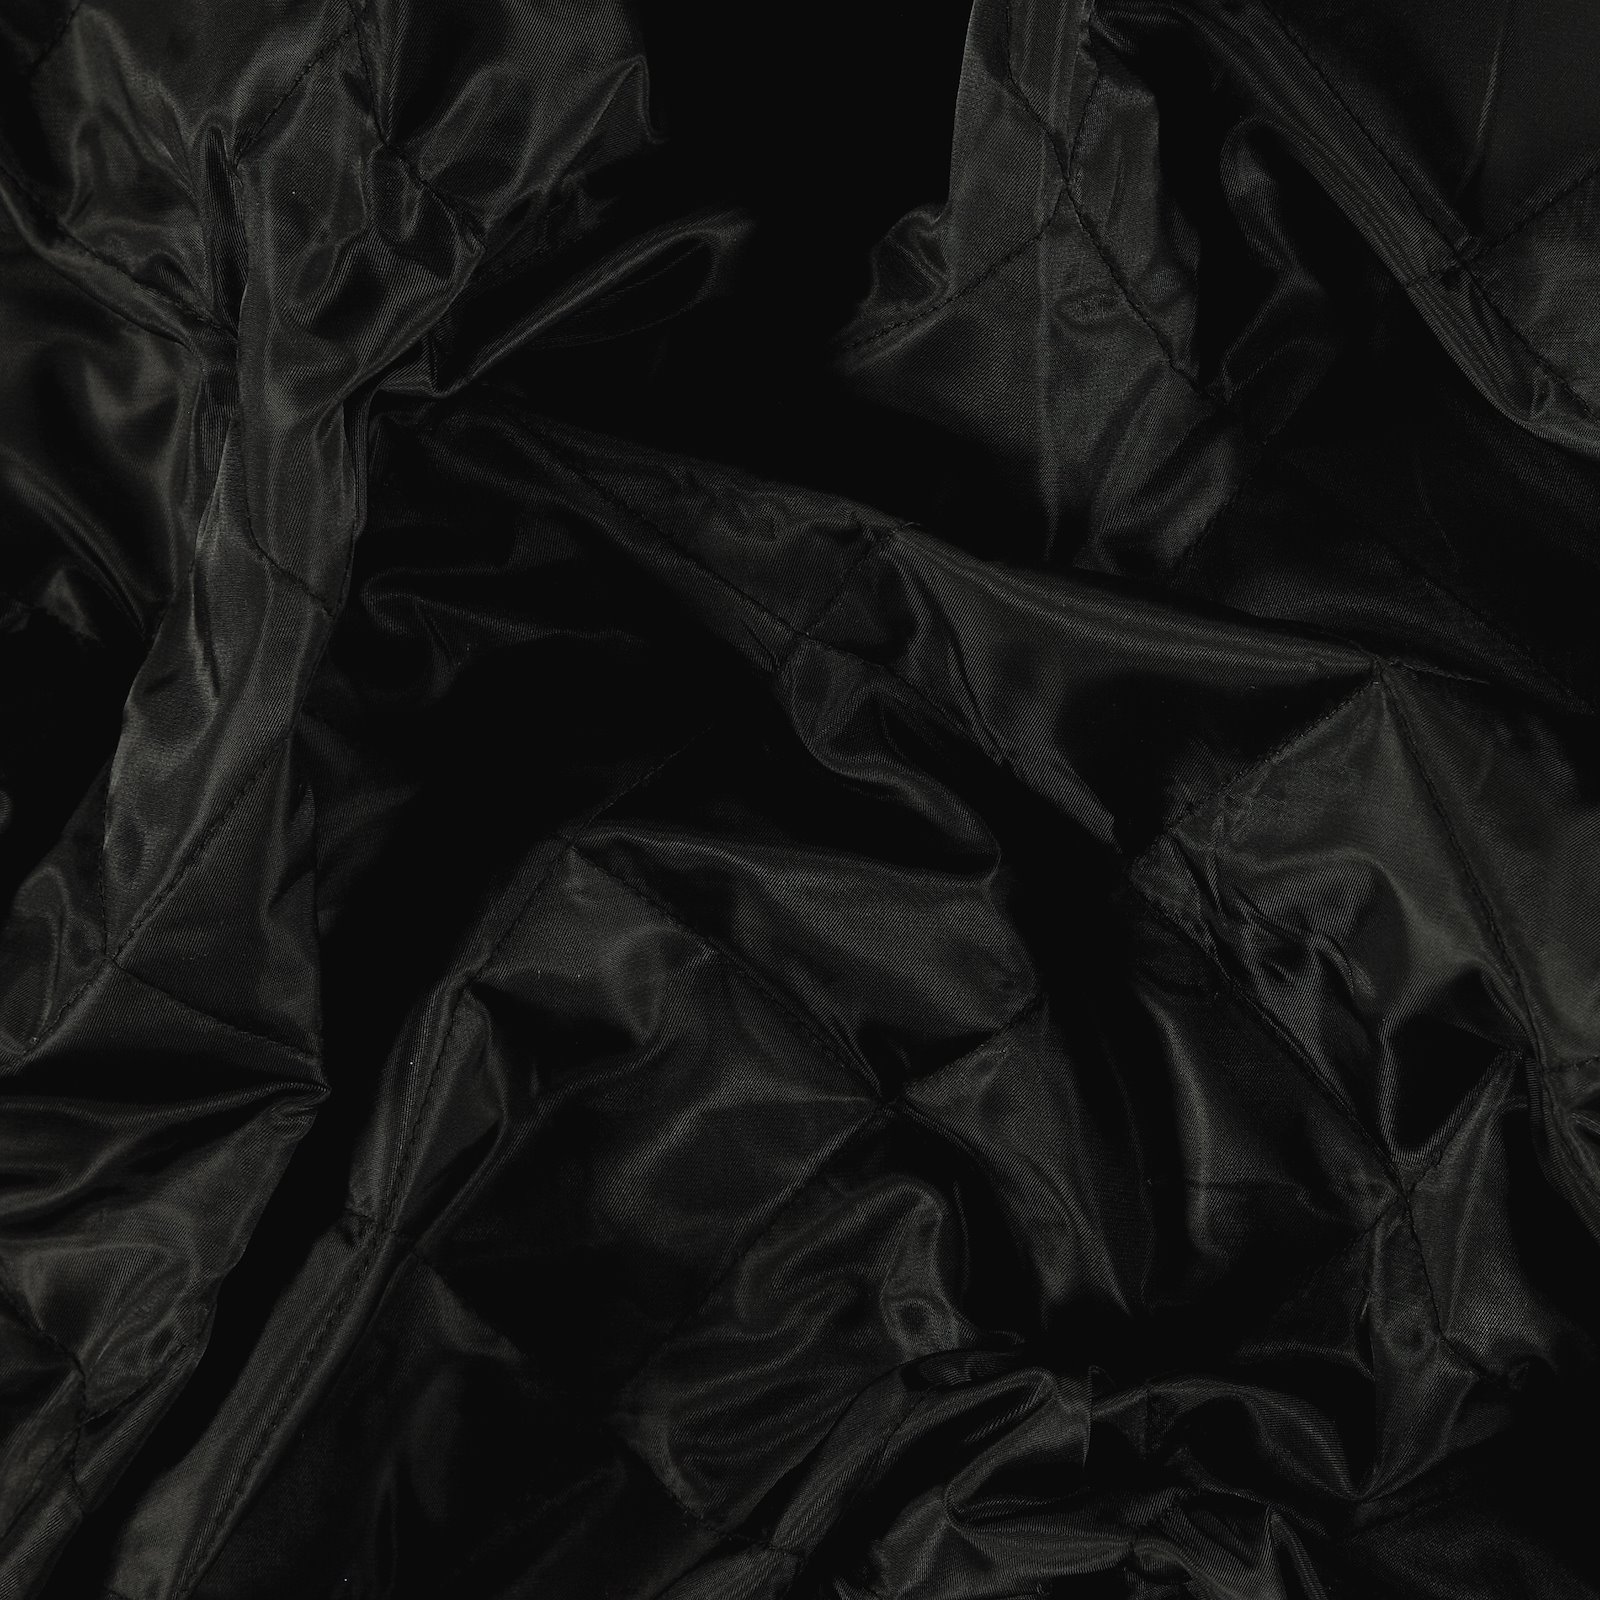 Chăn ép đen là một sản phẩm ấm áp và phù hợp với mọi phong cách trang trí. Với tông màu đen thanh lịch, chăn ép sẽ giúp cho không gian phòng ngủ của bạn trở nên bí ẩn hơn. Hãy xem hình ảnh để tìm cho mình một chiếc chăn ép đen ưng ý.